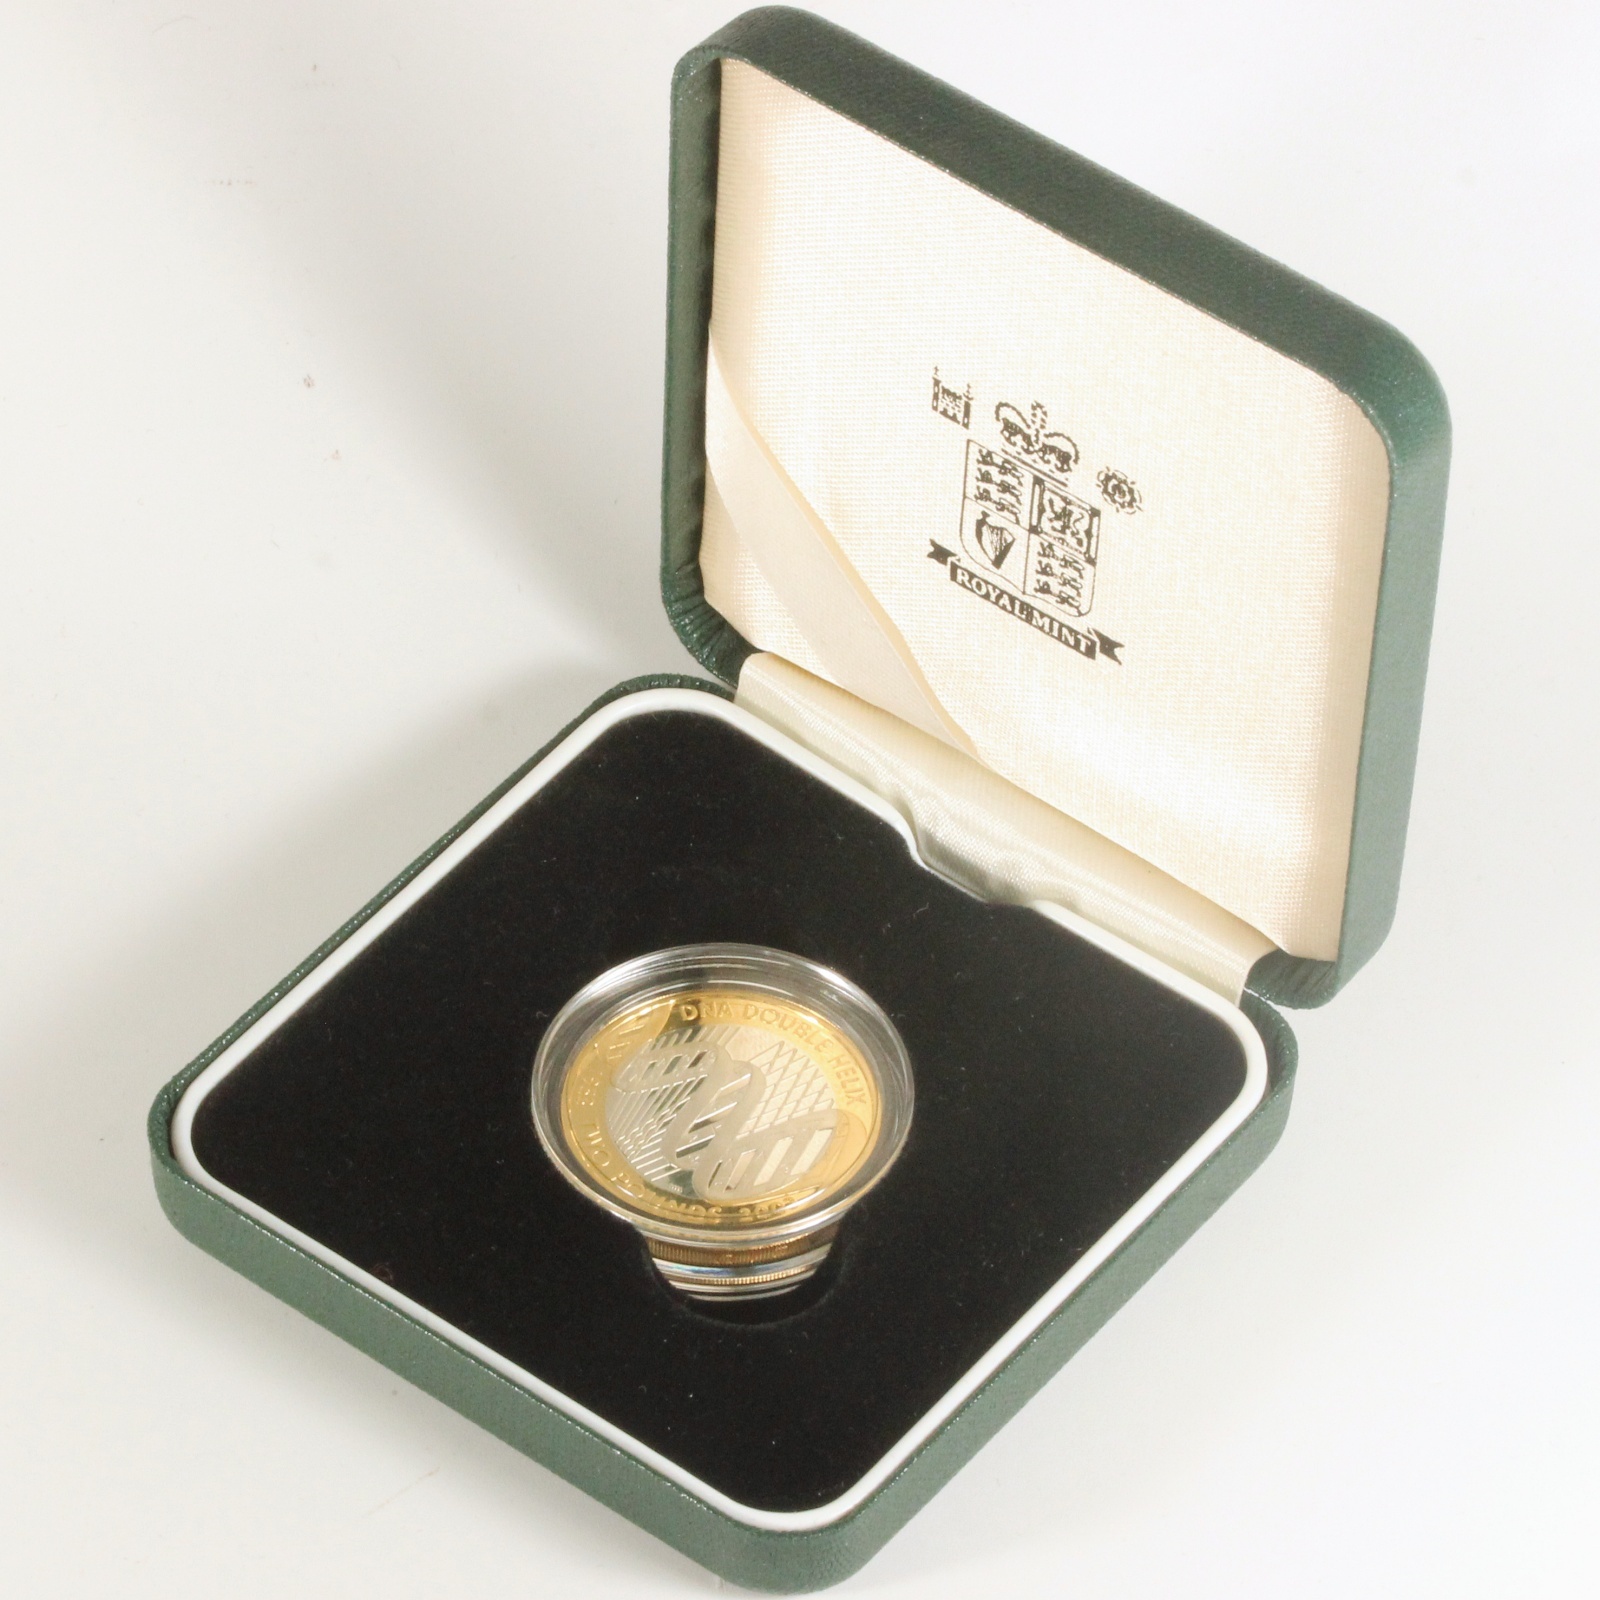 英国王室造幣局 2003年 DNA発見50周年記念 2色2ポンド銀貨 イギリス ROYAL MINT ミントセット ミスターコインズ